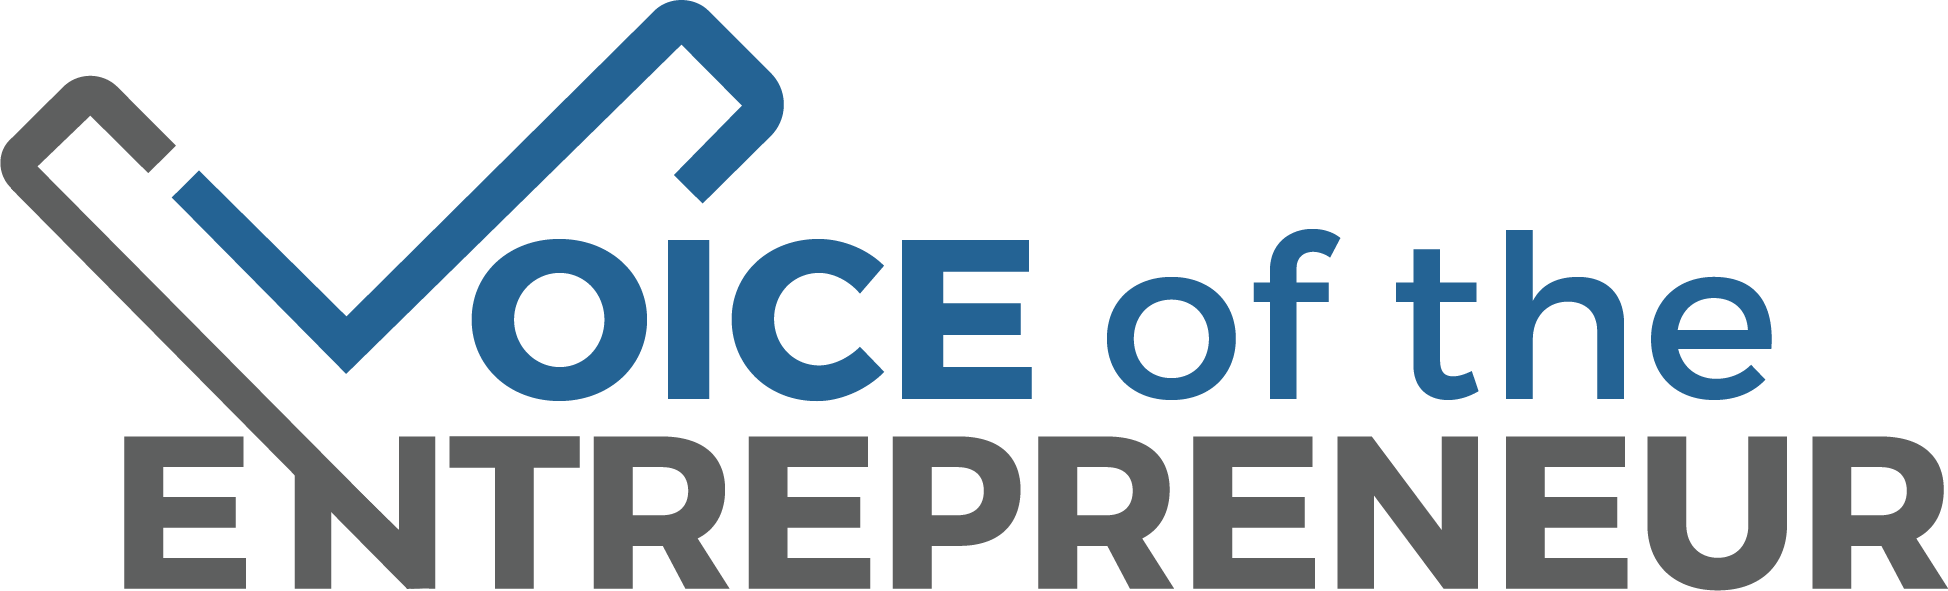 Voiceofthe Entrepreneur Logo PNG